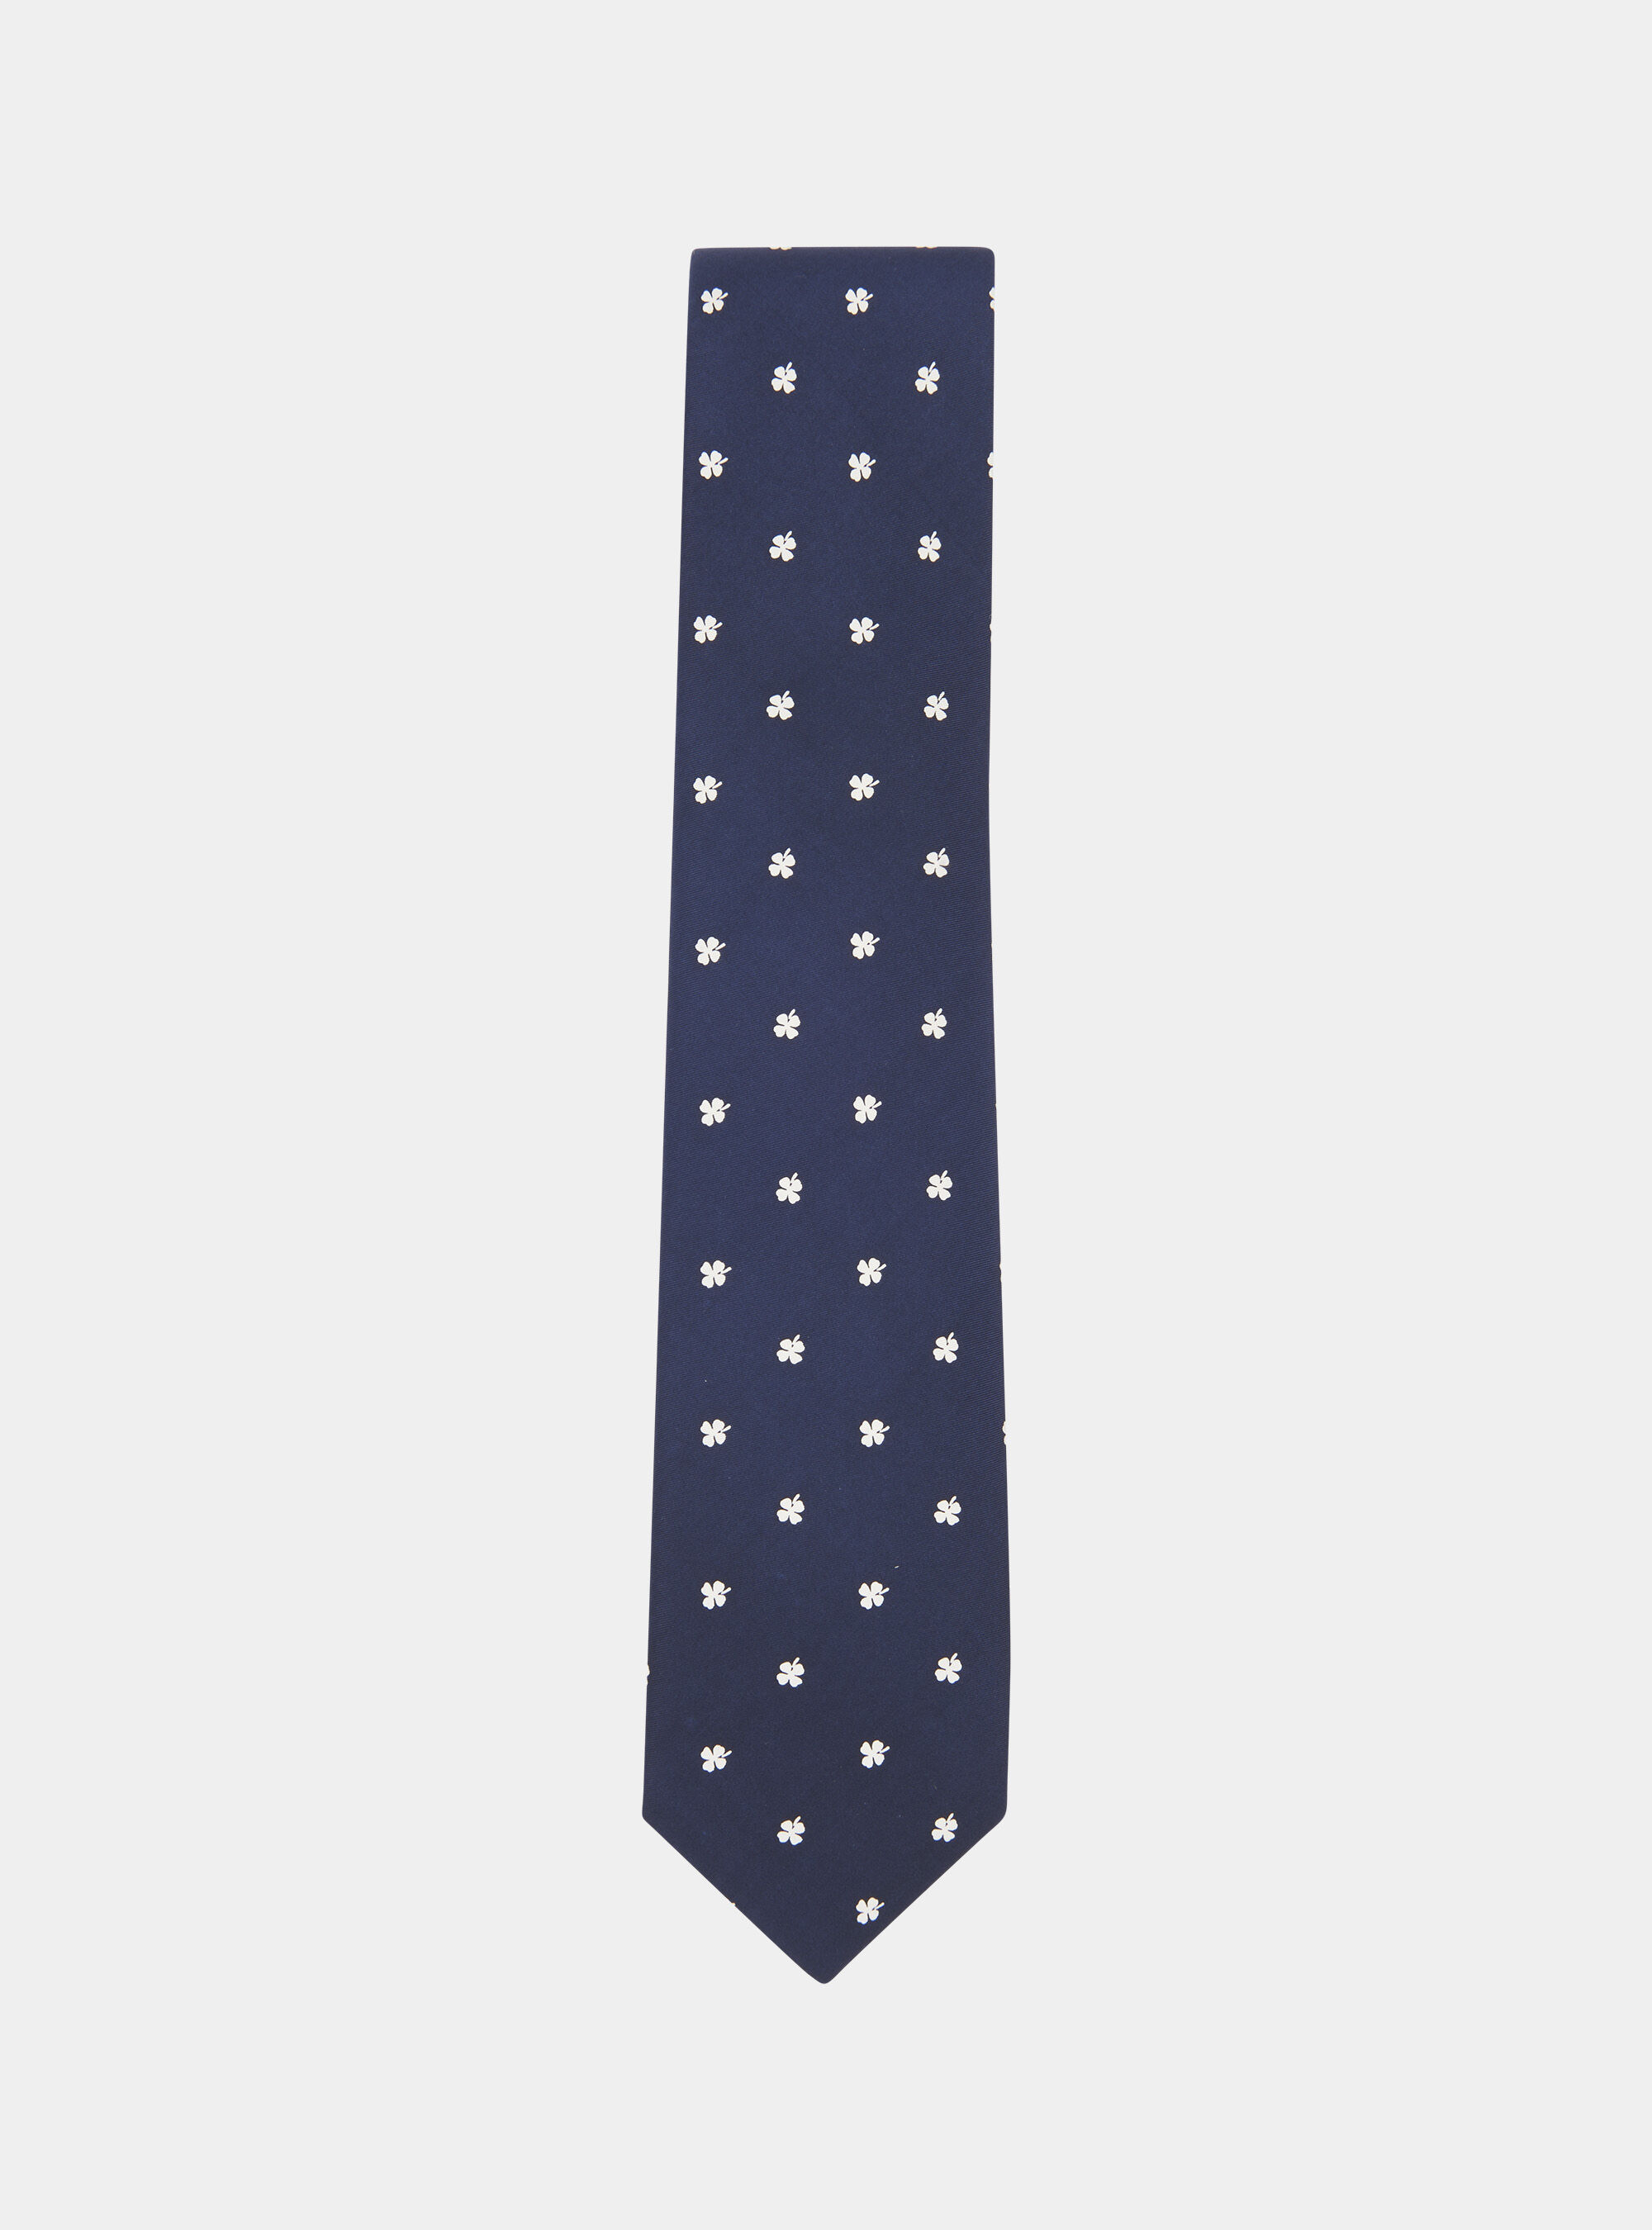 Xinnun 4 Cravatte Set Cravatta Uomo con Cerniera Pre-annodata 48 x 5 cm 